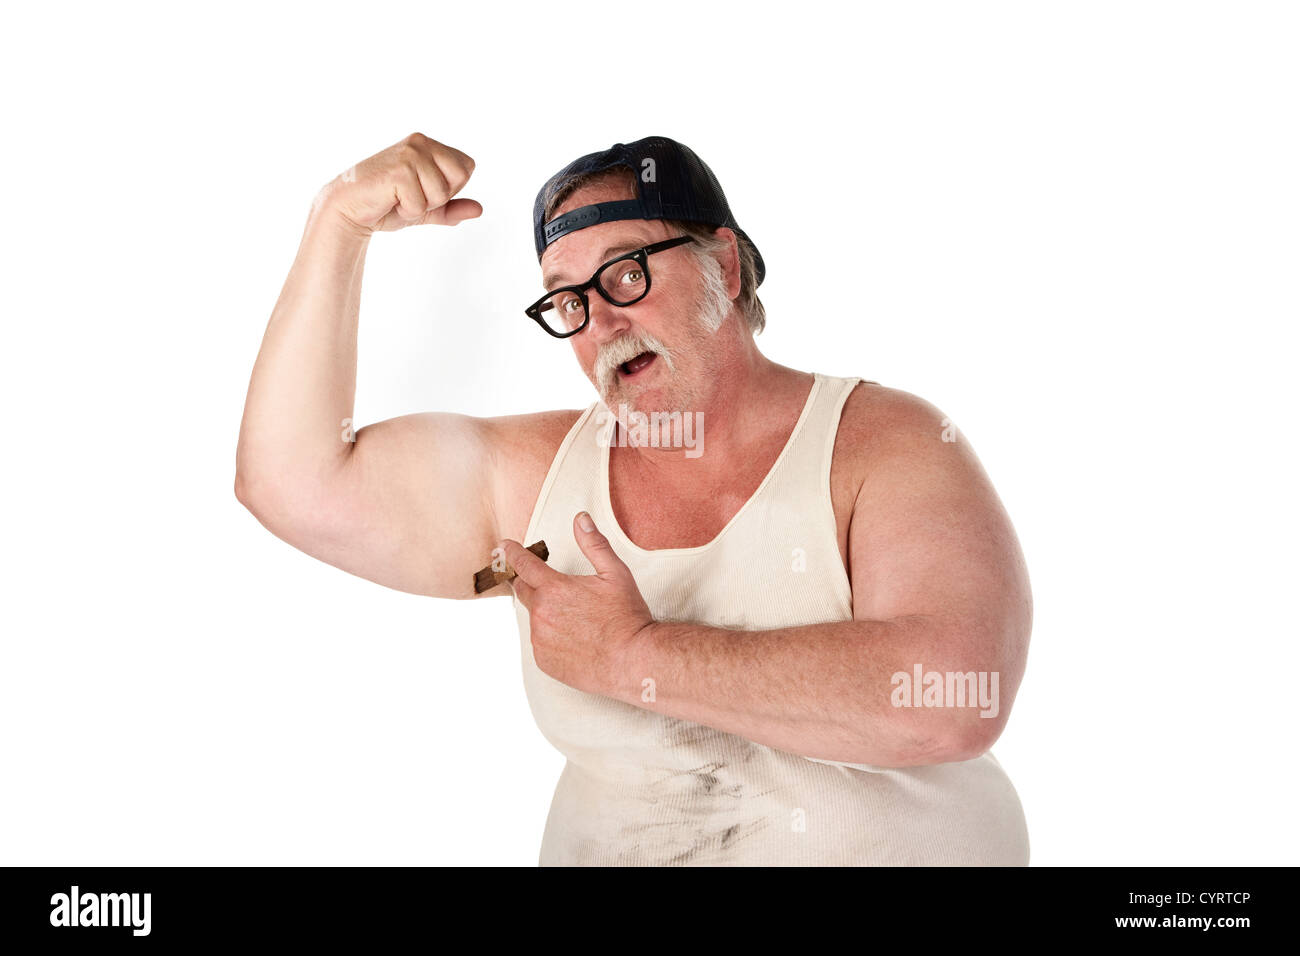 L'homme obèse en tee shirt sur fond blanc Banque D'Images